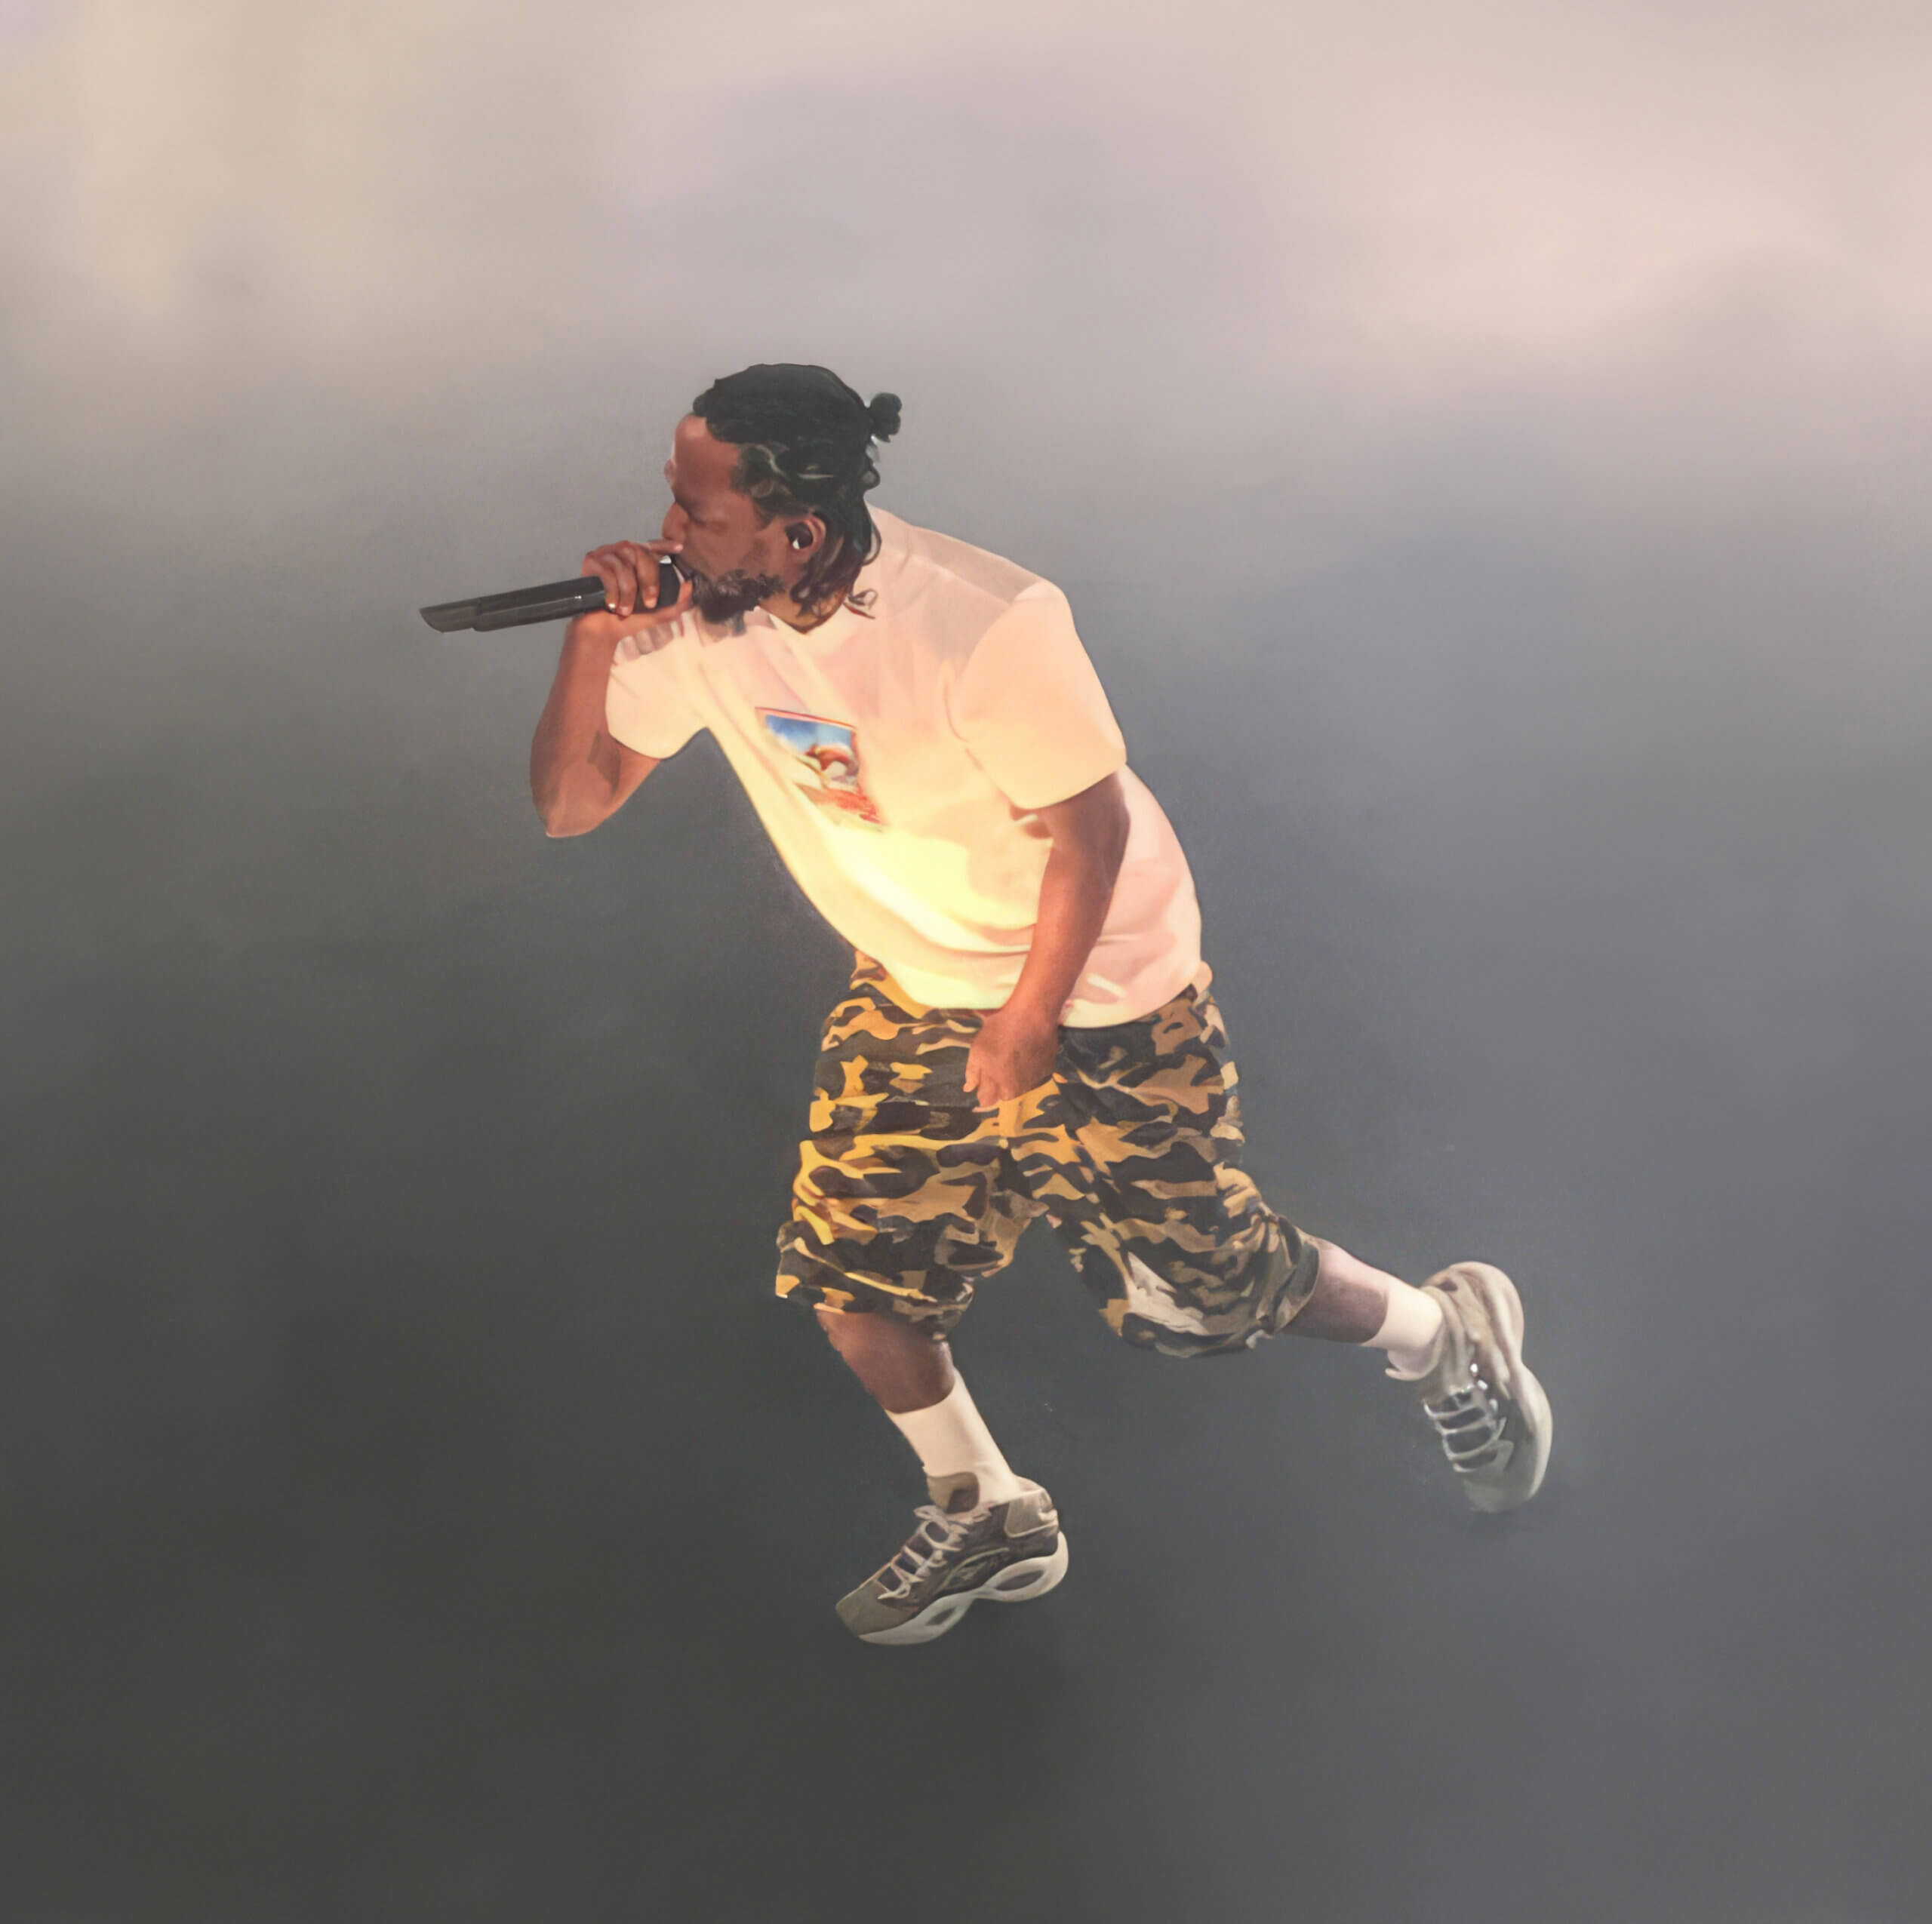 Kendrick on stage